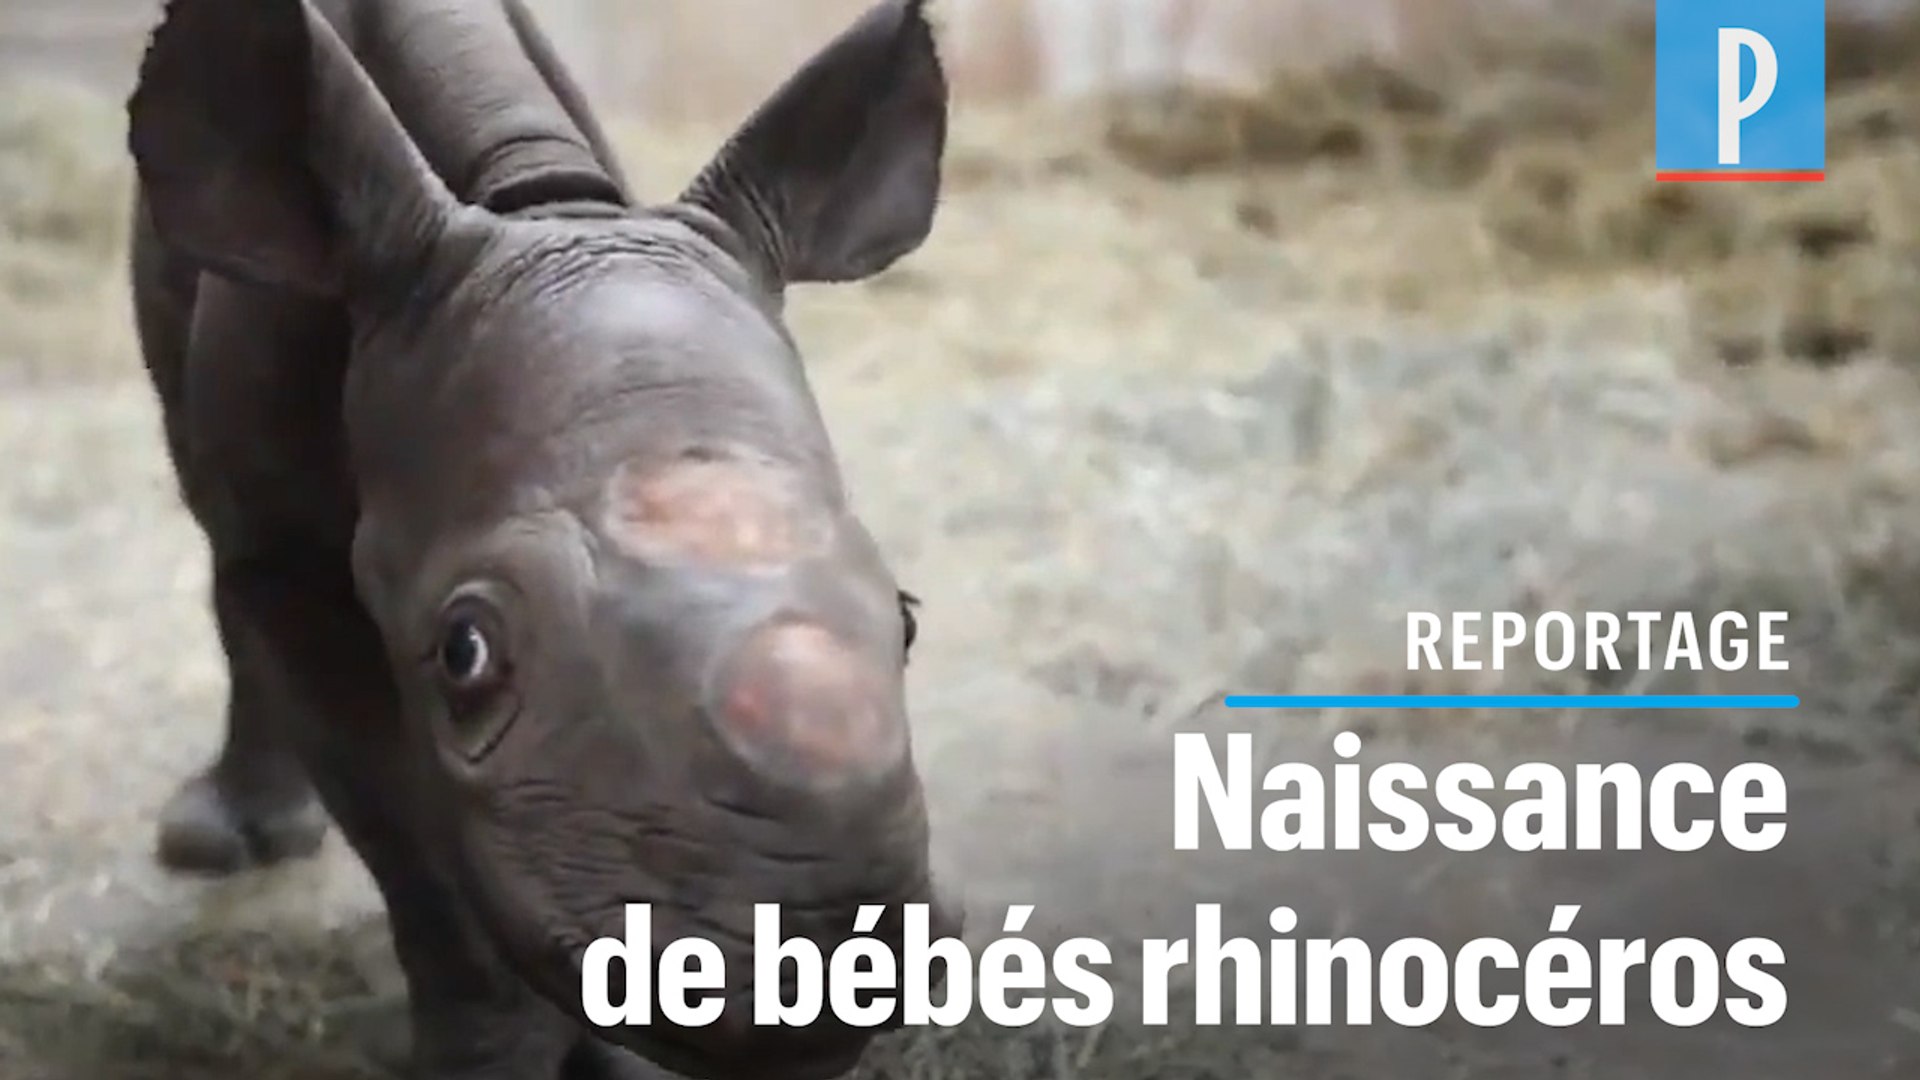 VIDEO. Naissance en décembre de deux bébés rhinocéros noirs